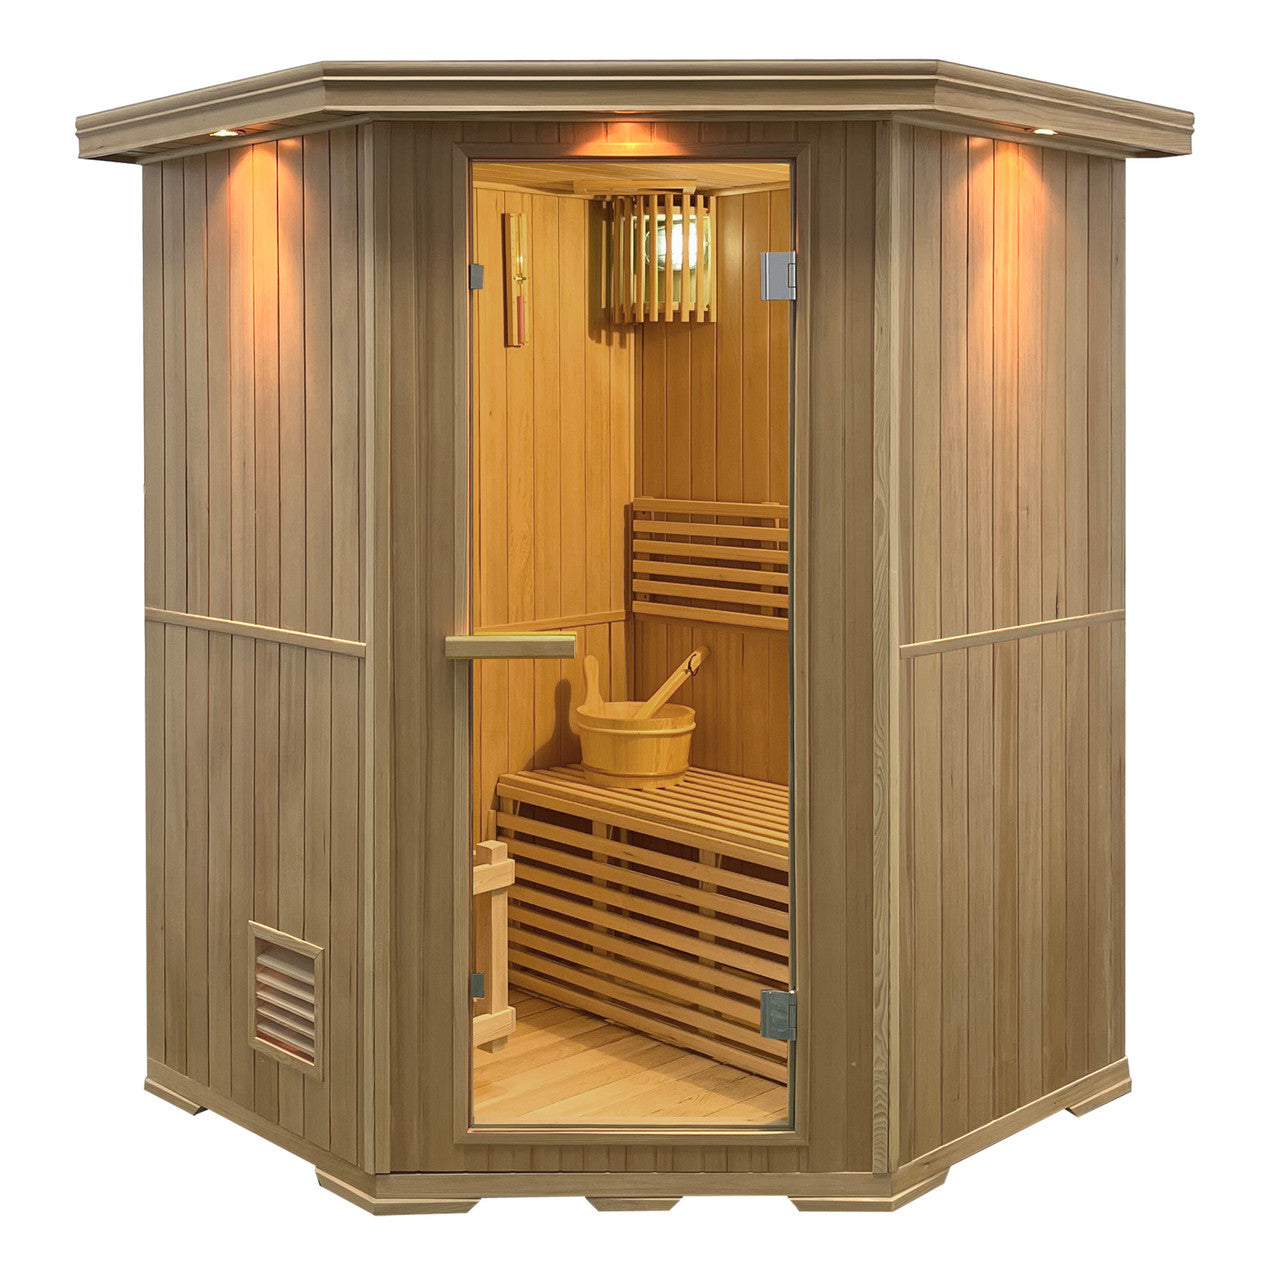 Canadian Hemlock Wet Dry Indoor Sauna - 4.5 kW Harvia KIP Heater - 4 Person